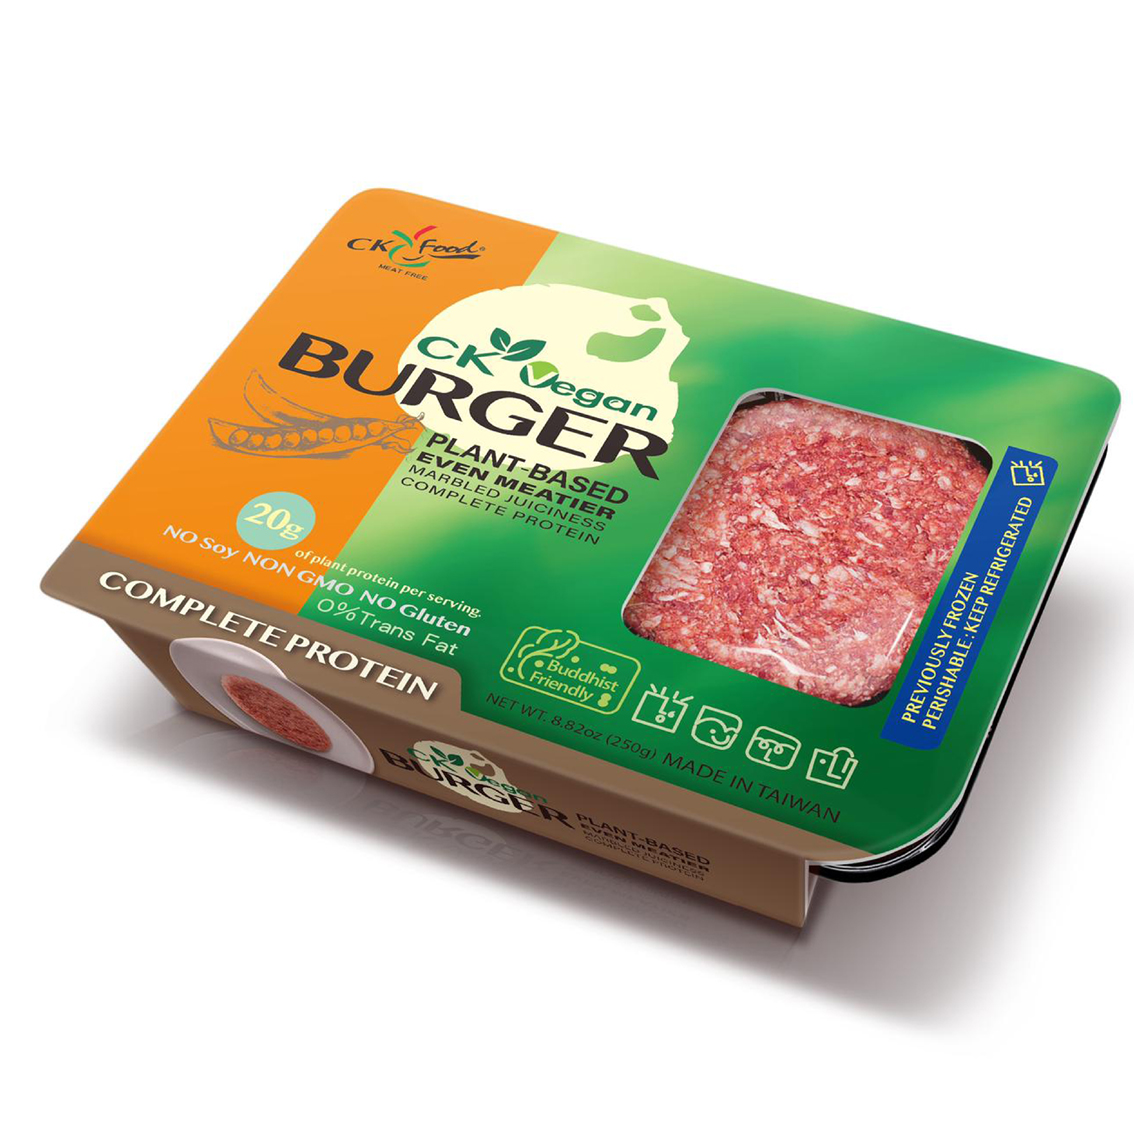 Image CK Vegan Burger 全广 - 纯素汉堡肉 250grams